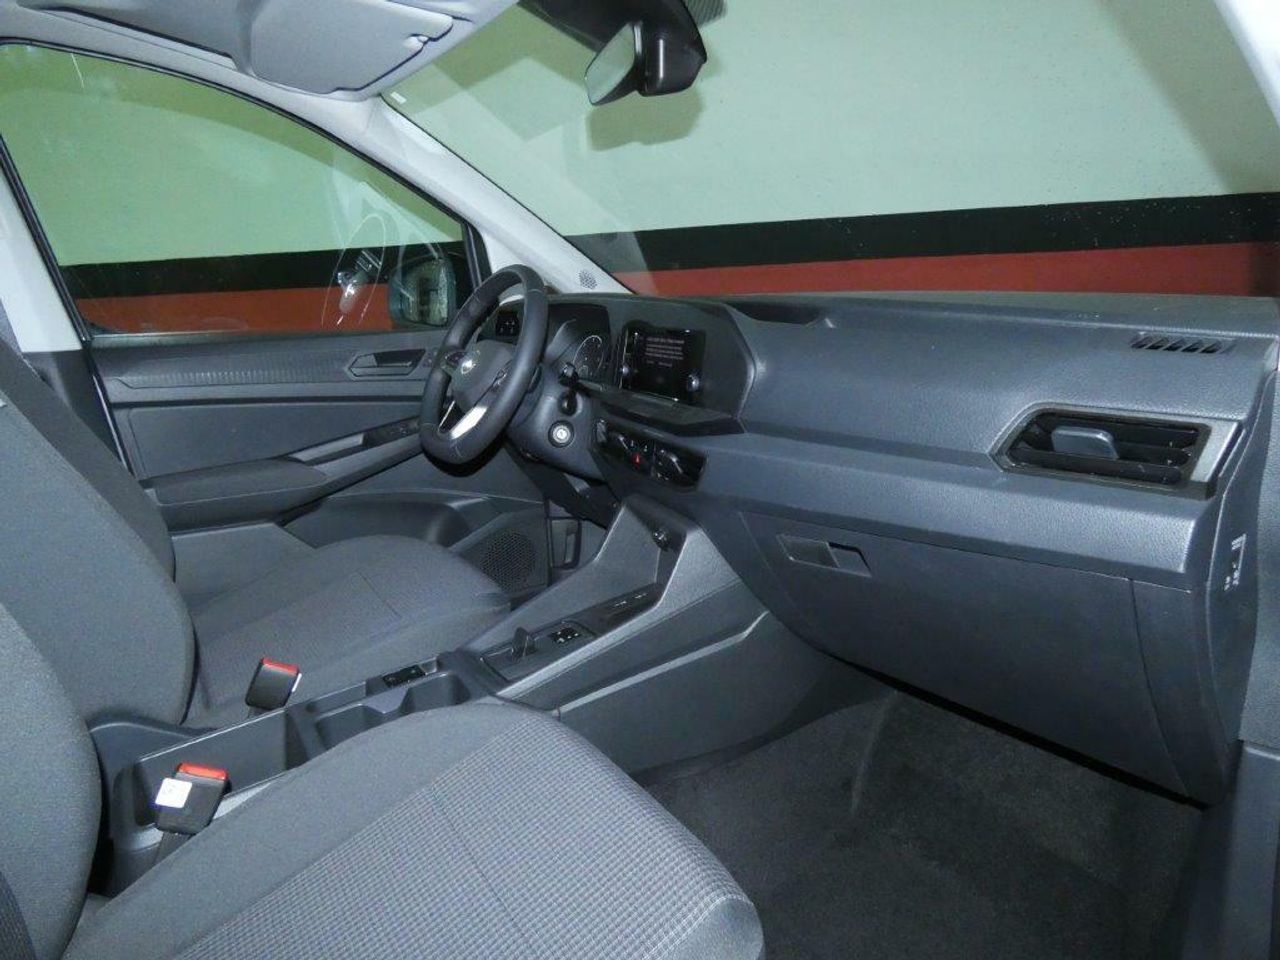 Foto Volkswagen Caddy 17